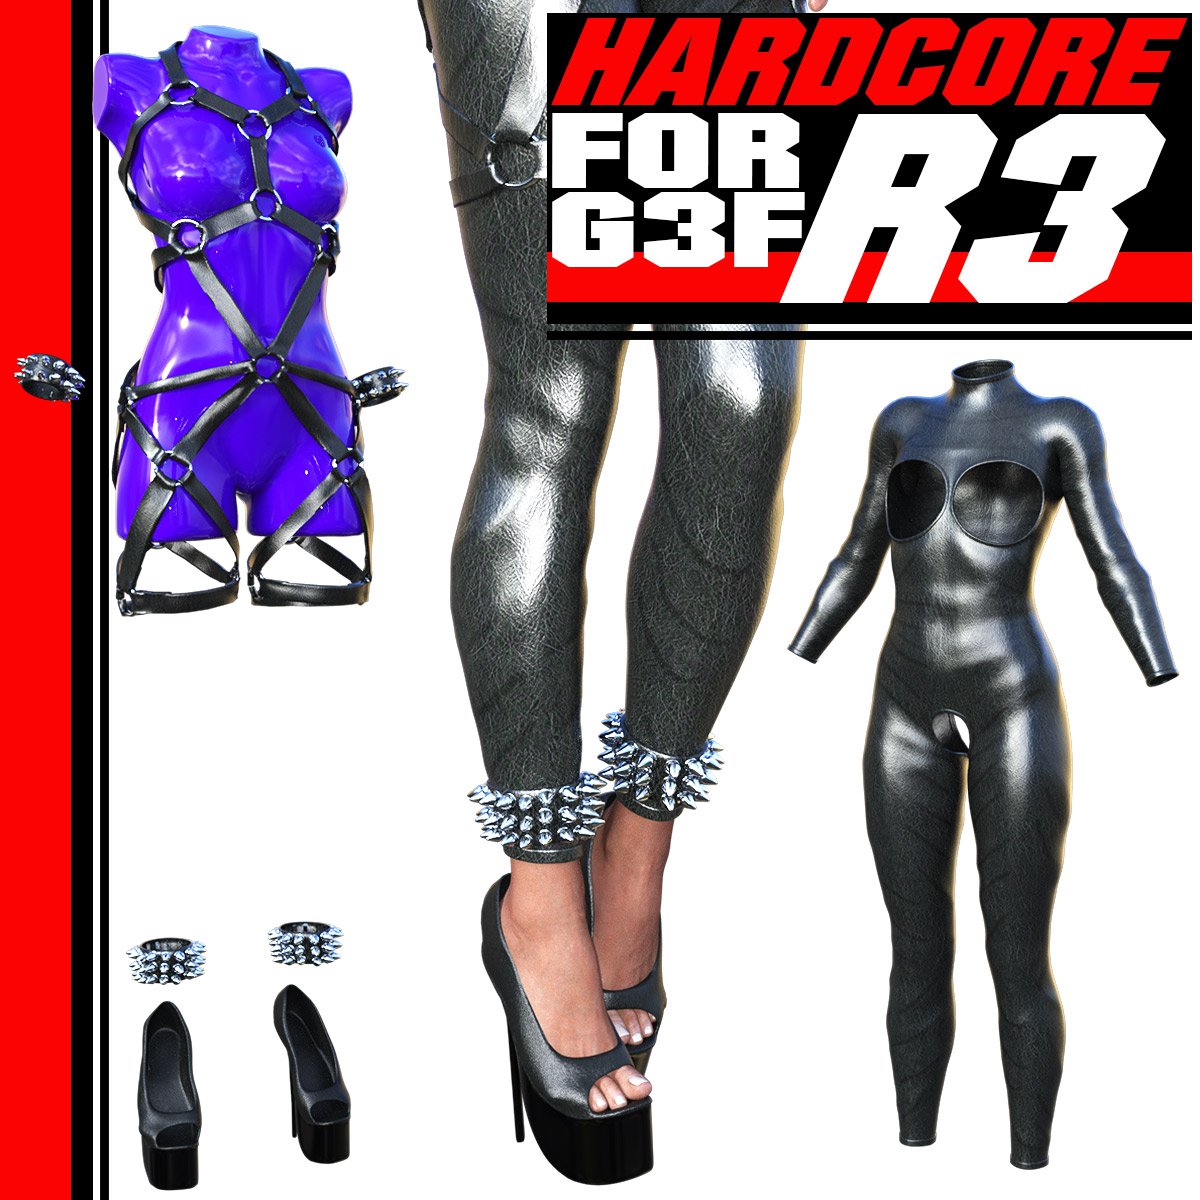 HARDCORE-R3 for G3 Females_DAZ3D下载站